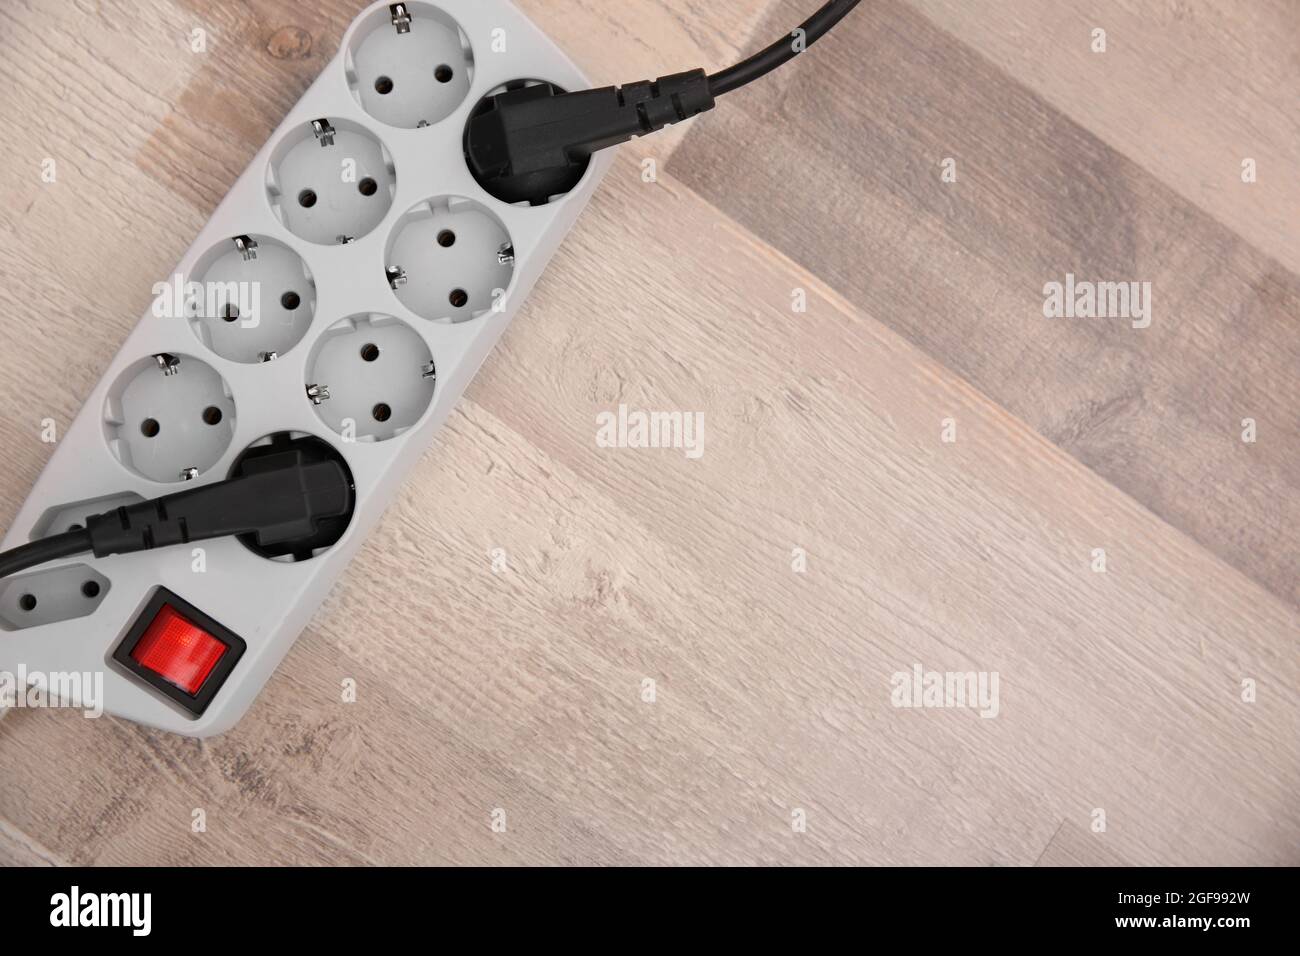 Regleta de conexiones en el suelo Fotografía de stock - Alamy